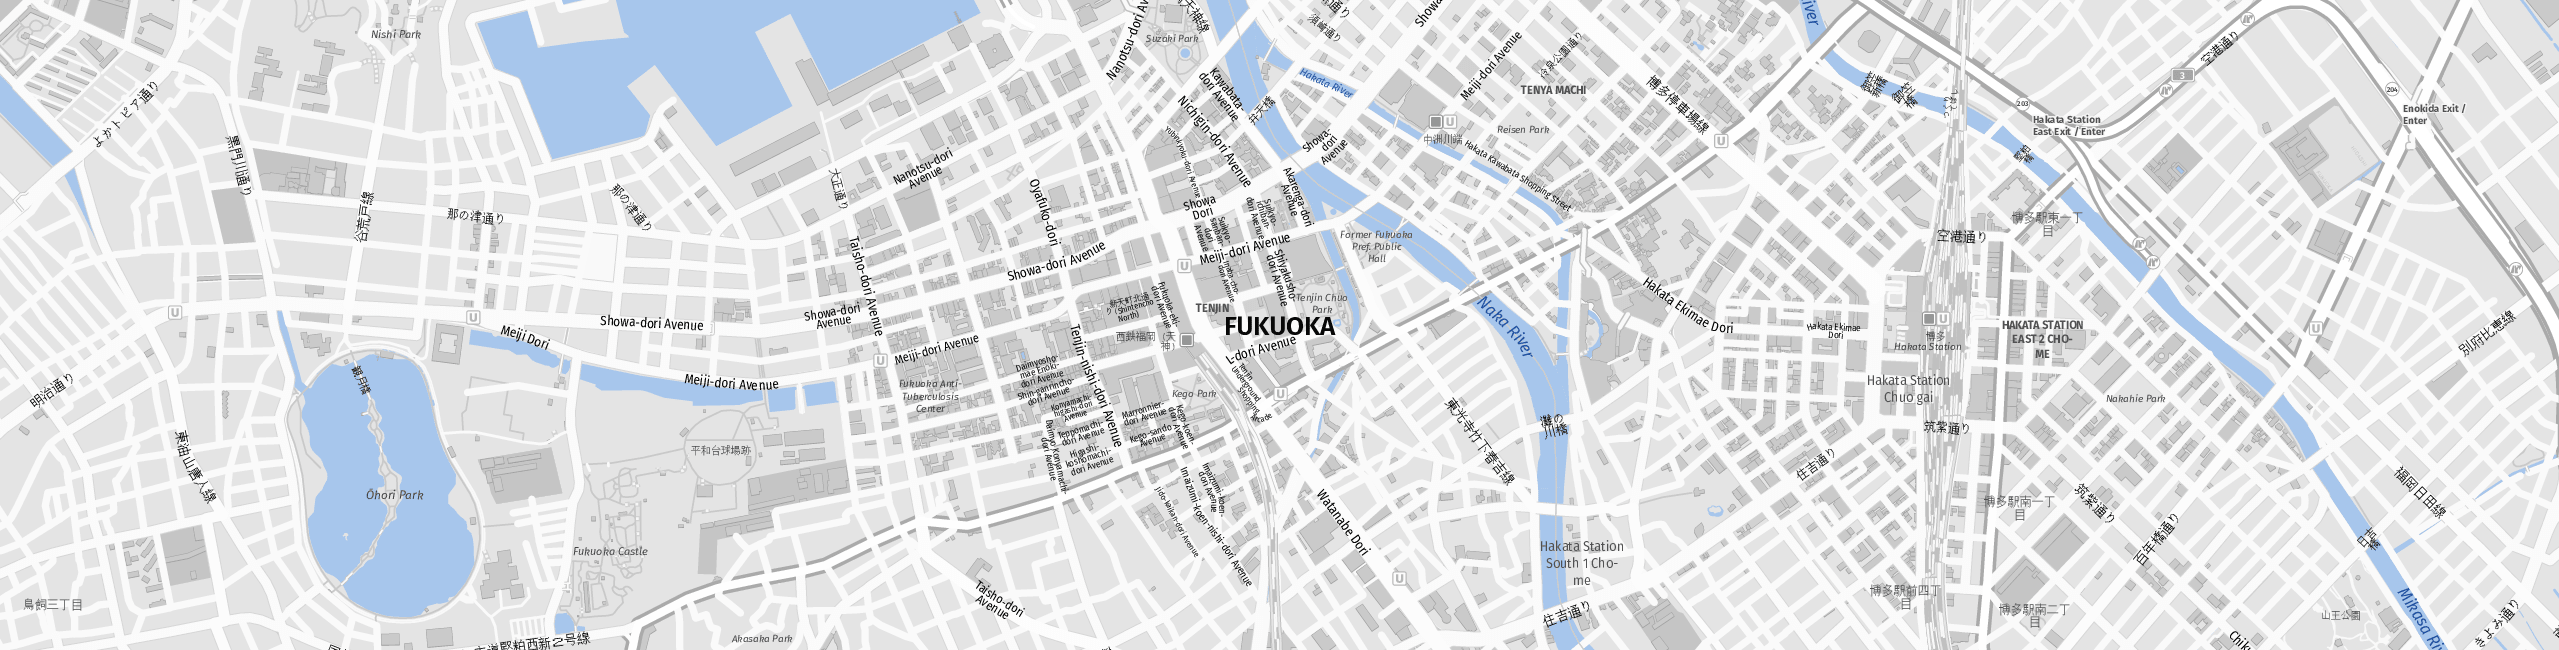 Stadtplan Fukuoka zum Downloaden.